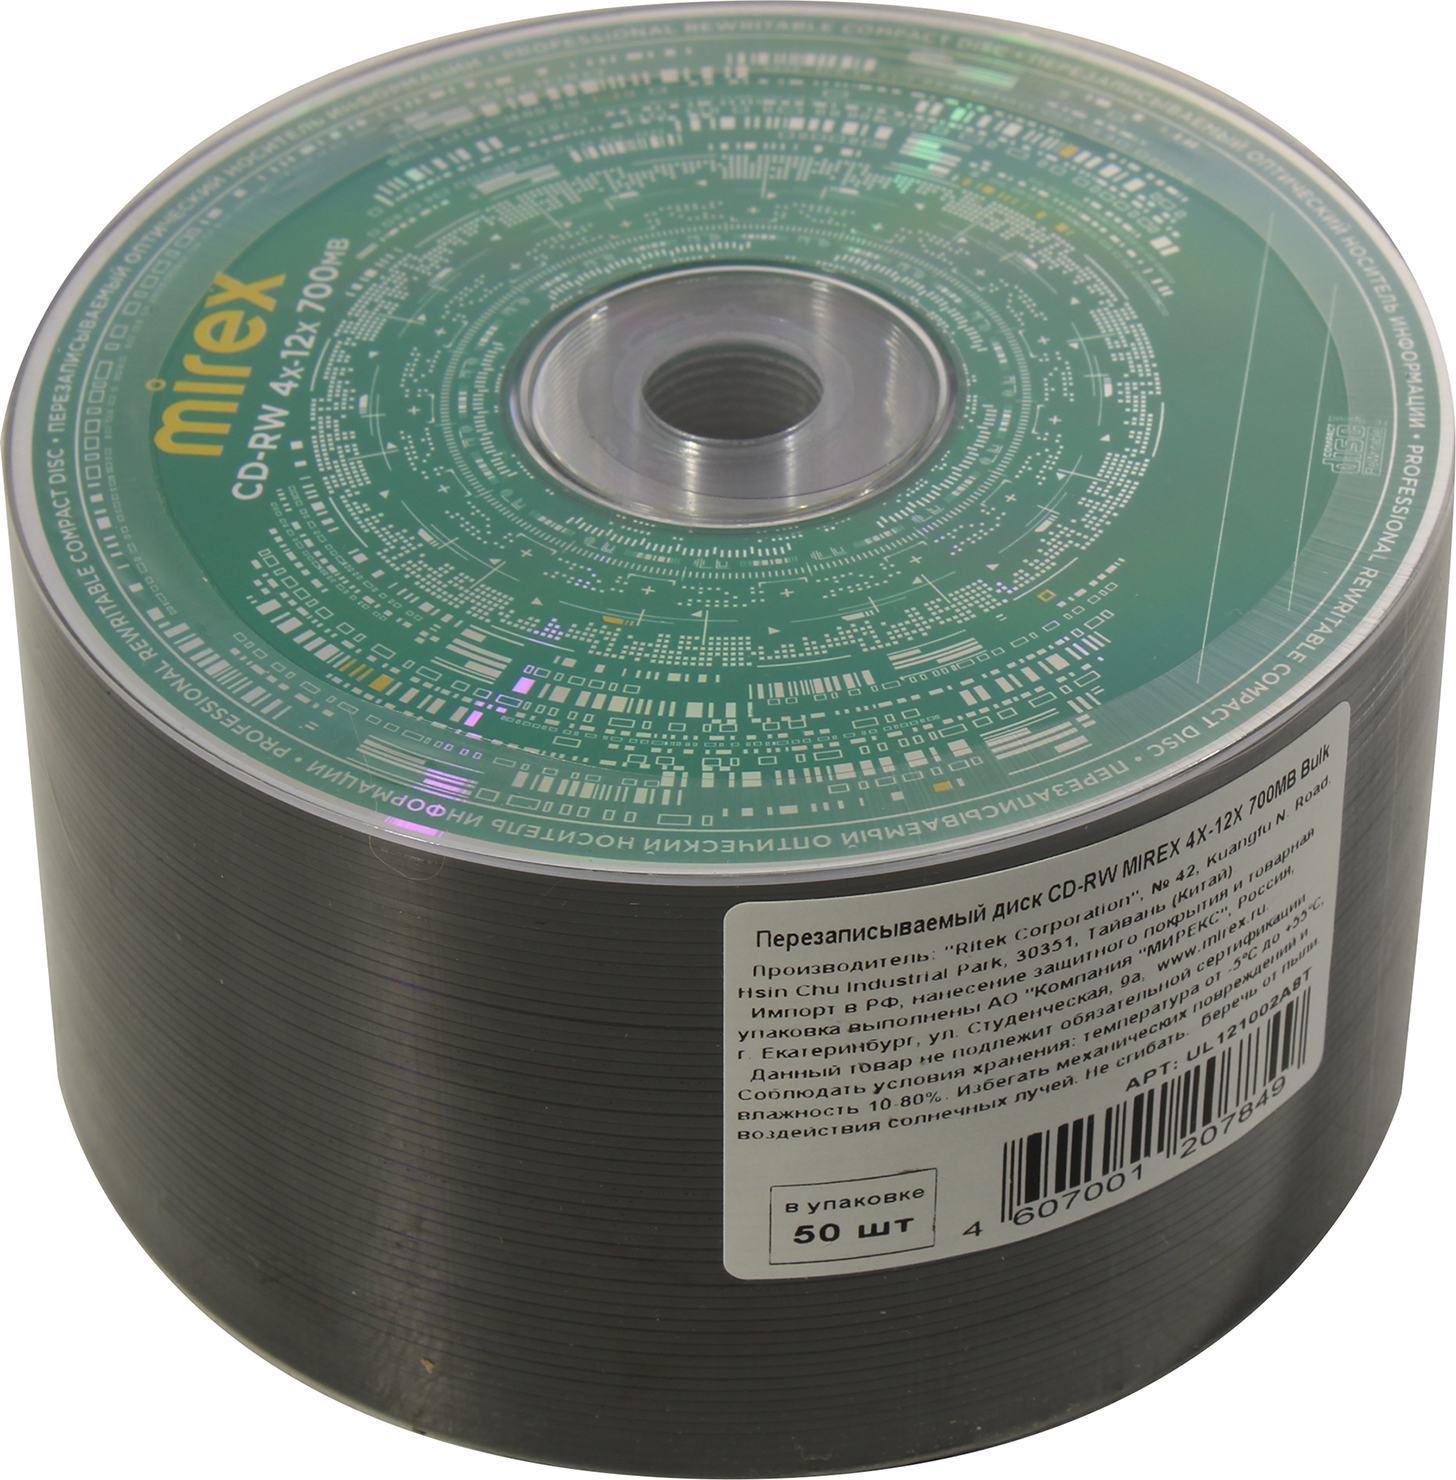 Диск Mirex CD-RW, 700Mb, 12x, термопленка, 50 шт, Printable (207849)